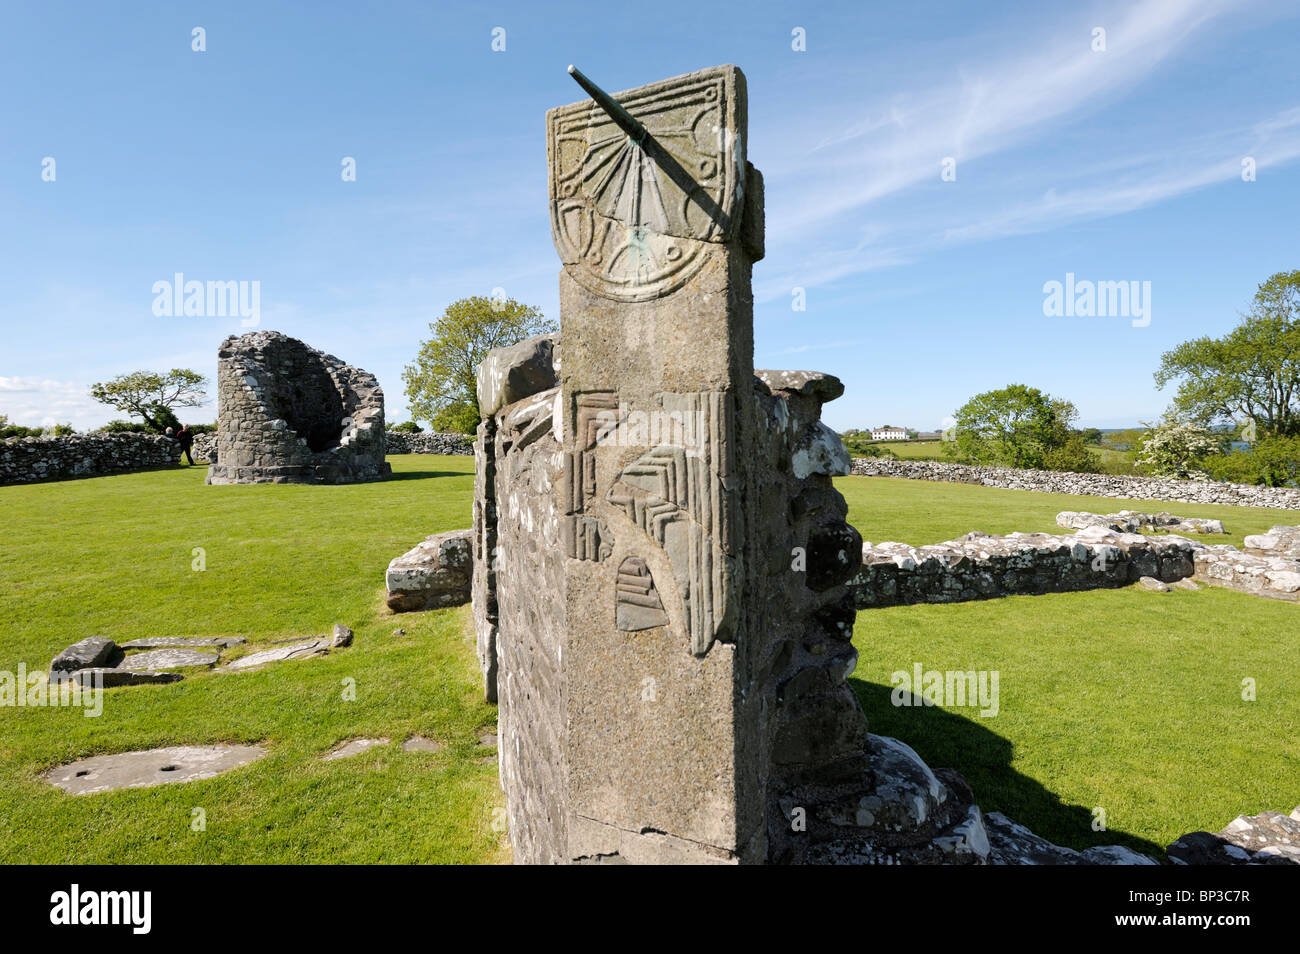 Il moncone di torre rotonda e meridiana medioevale del monastero di Nendrum, Isola Mahee, Strangford Lough, Co. Down, Irlanda del Nord Foto Stock